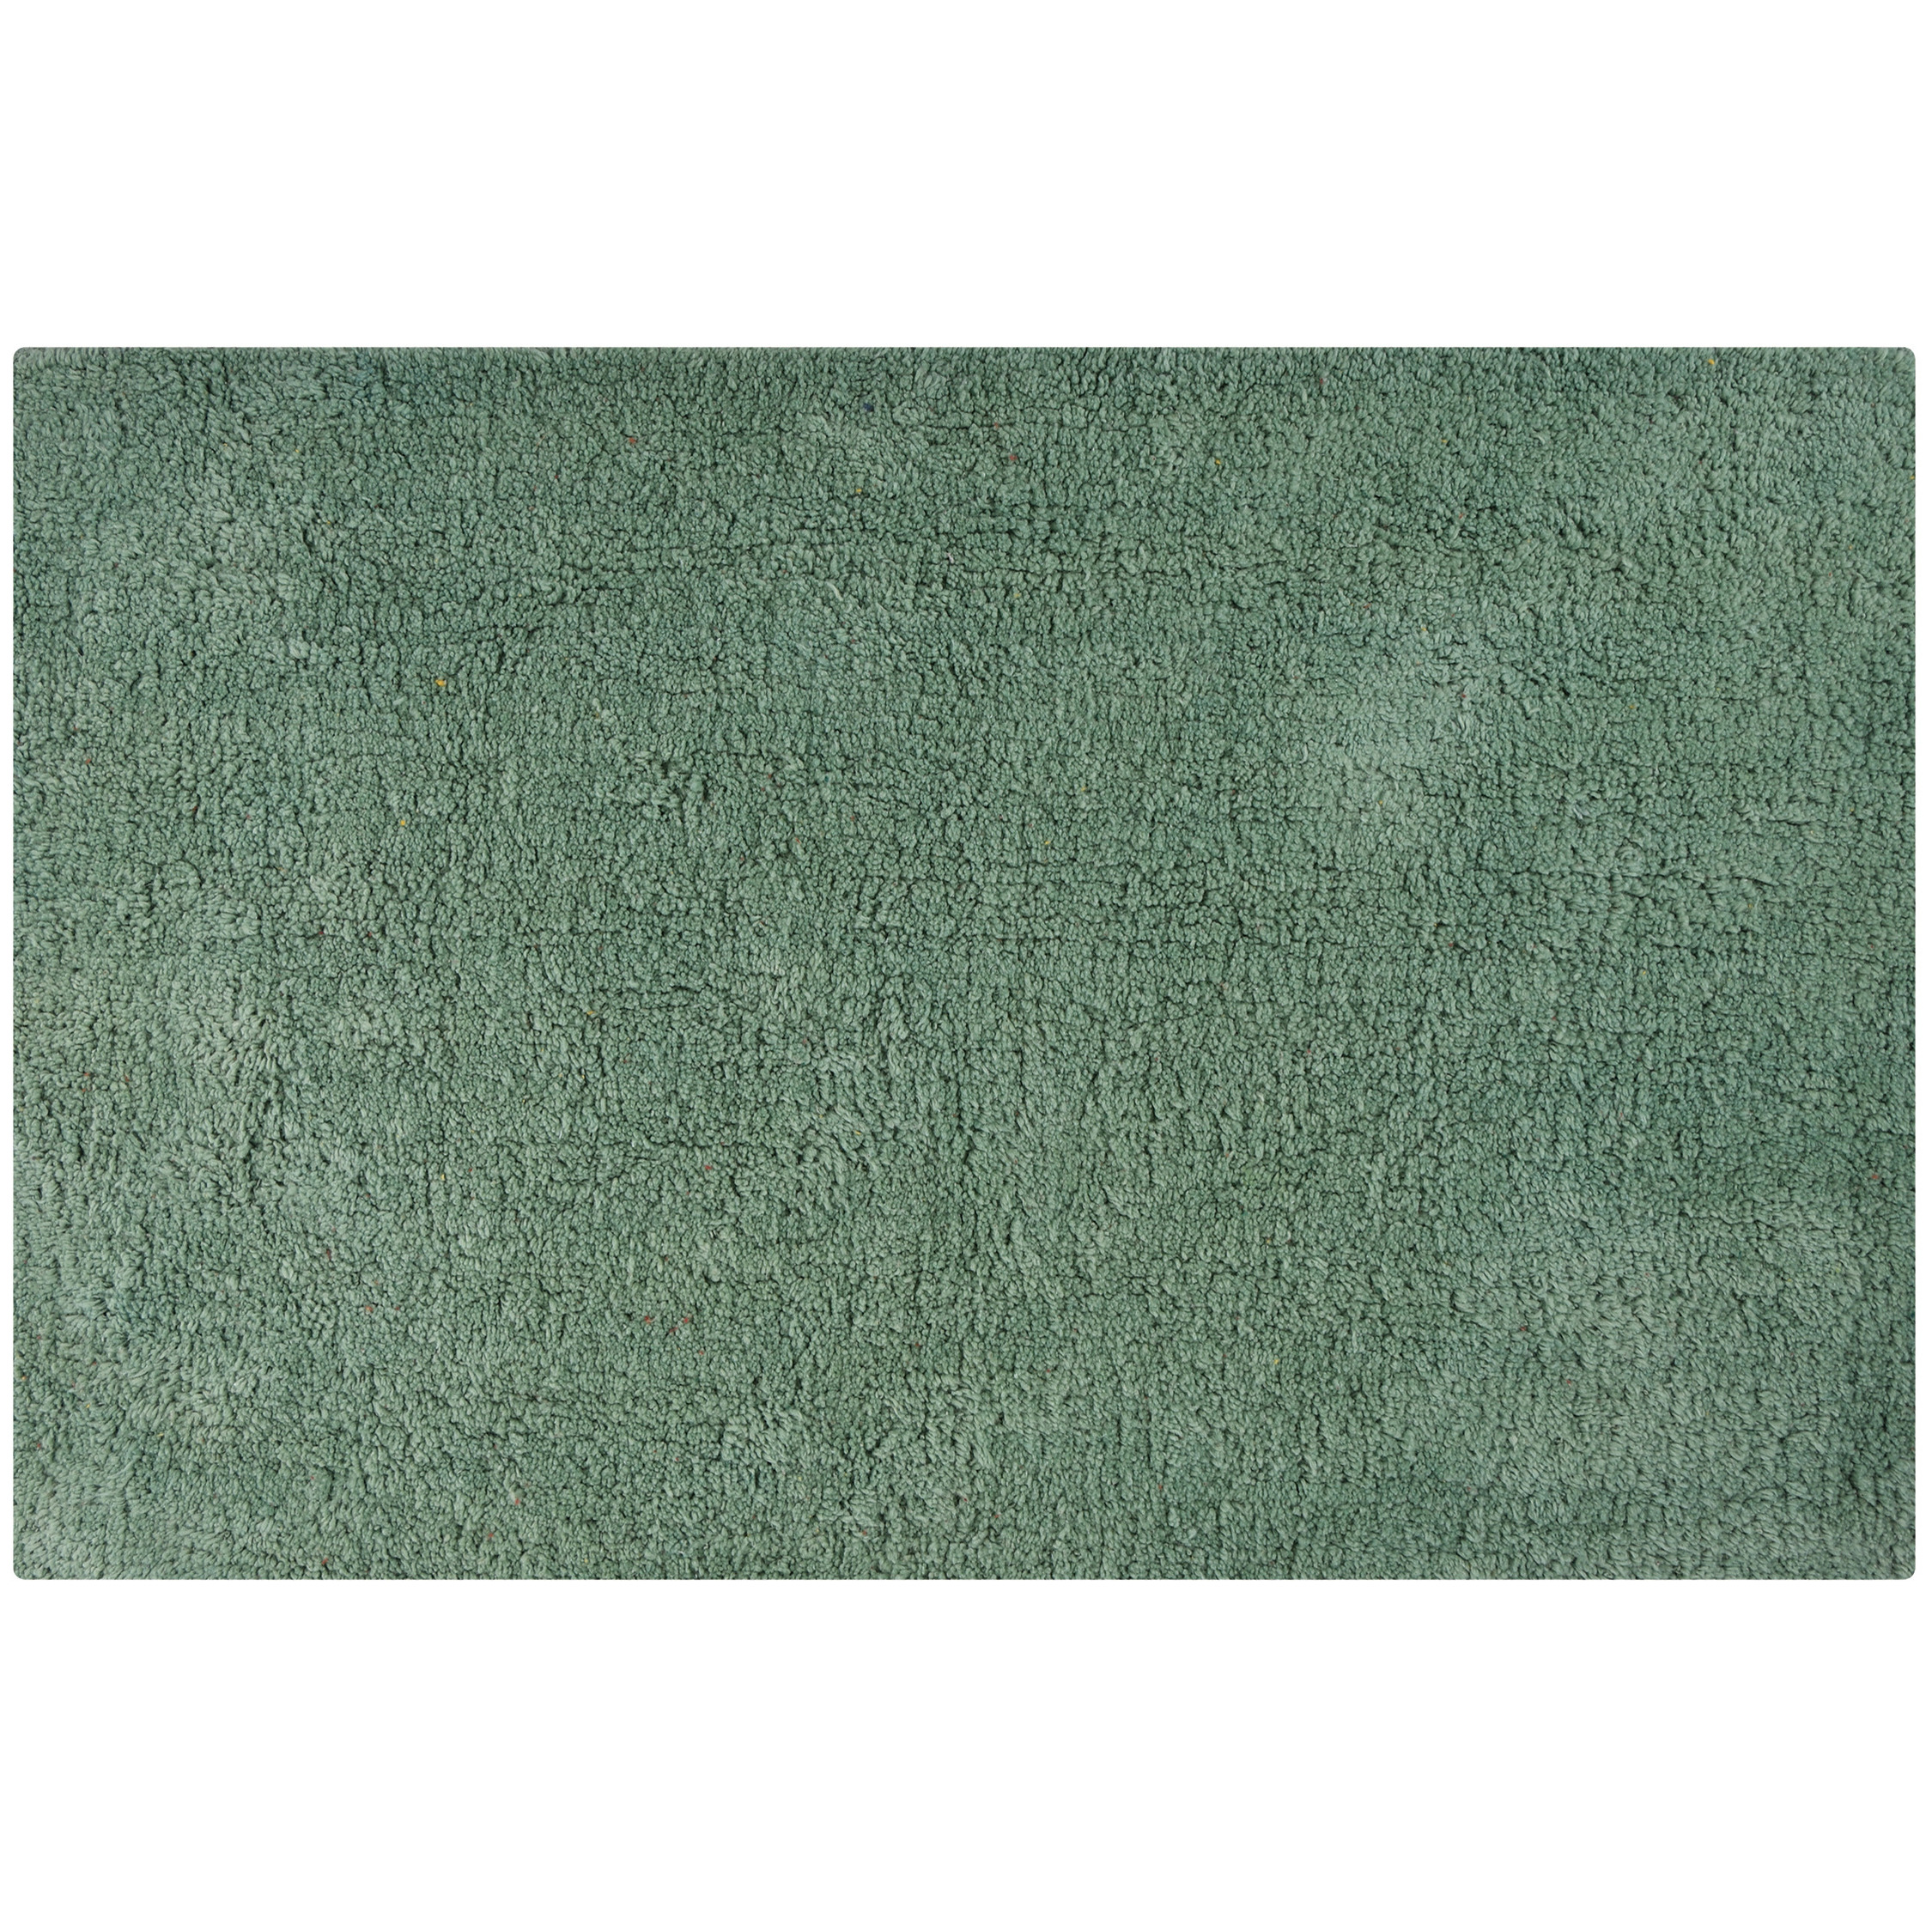 Badkamerkleedje-badmat tapijtje voor op de vloer groen 45 x 70 cm